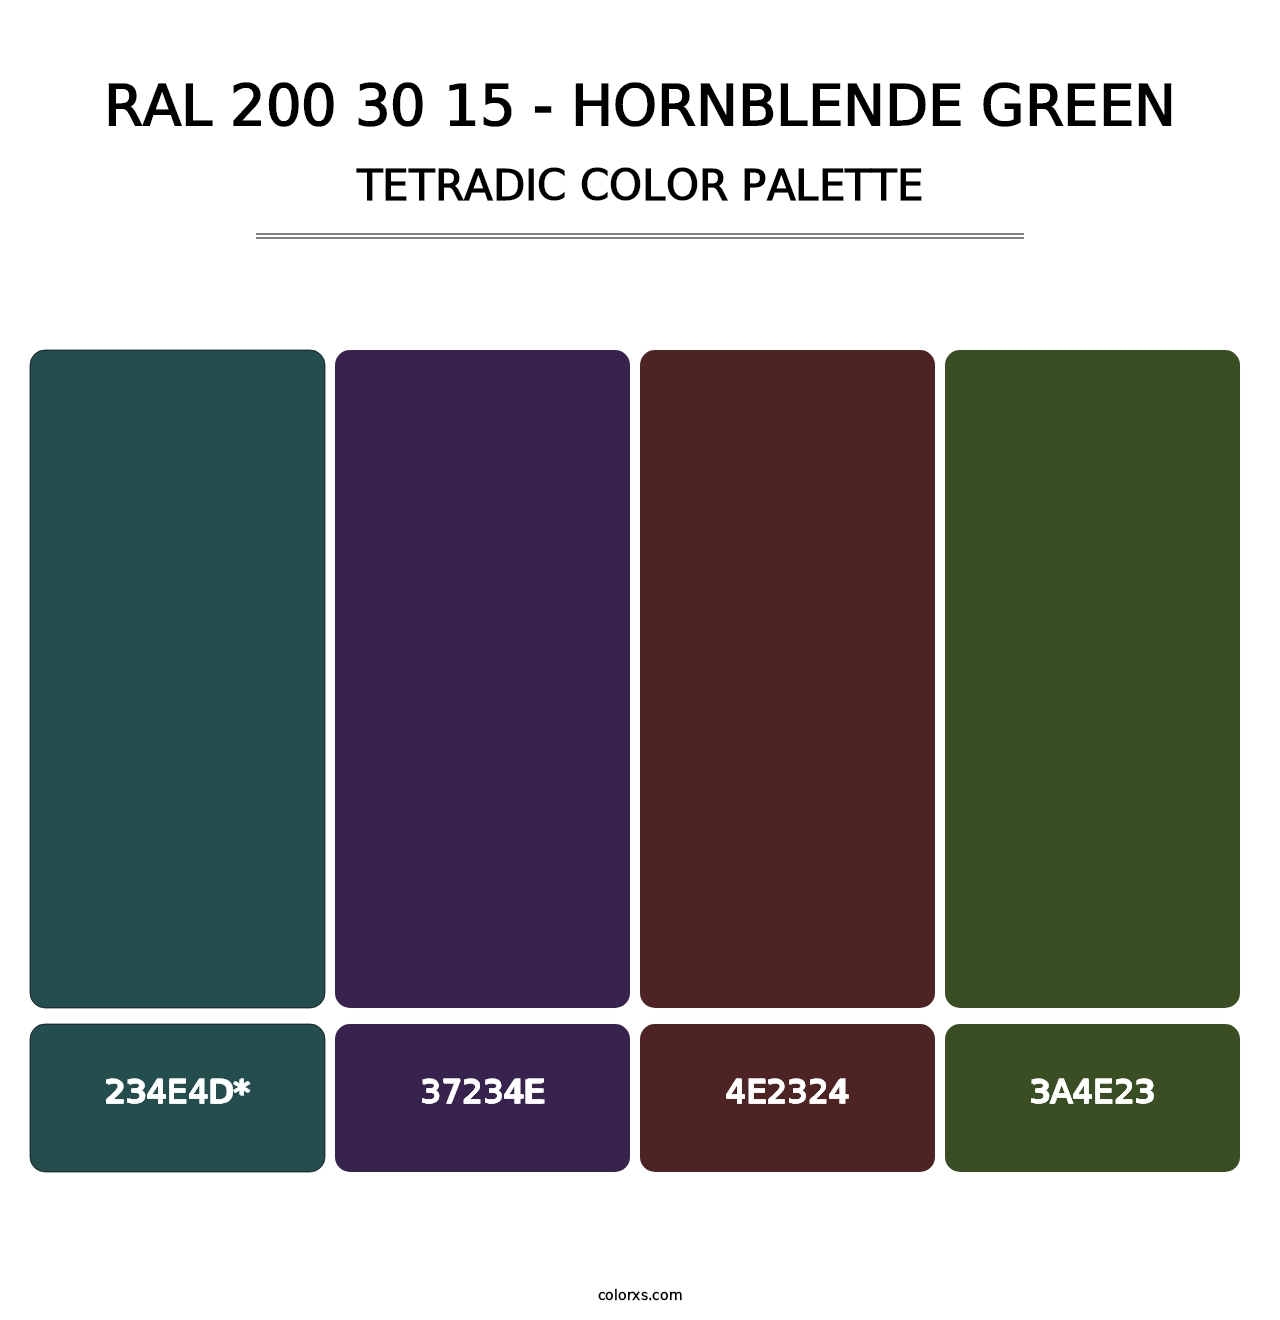 RAL 200 30 15 - Hornblende Green - Tetradic Color Palette